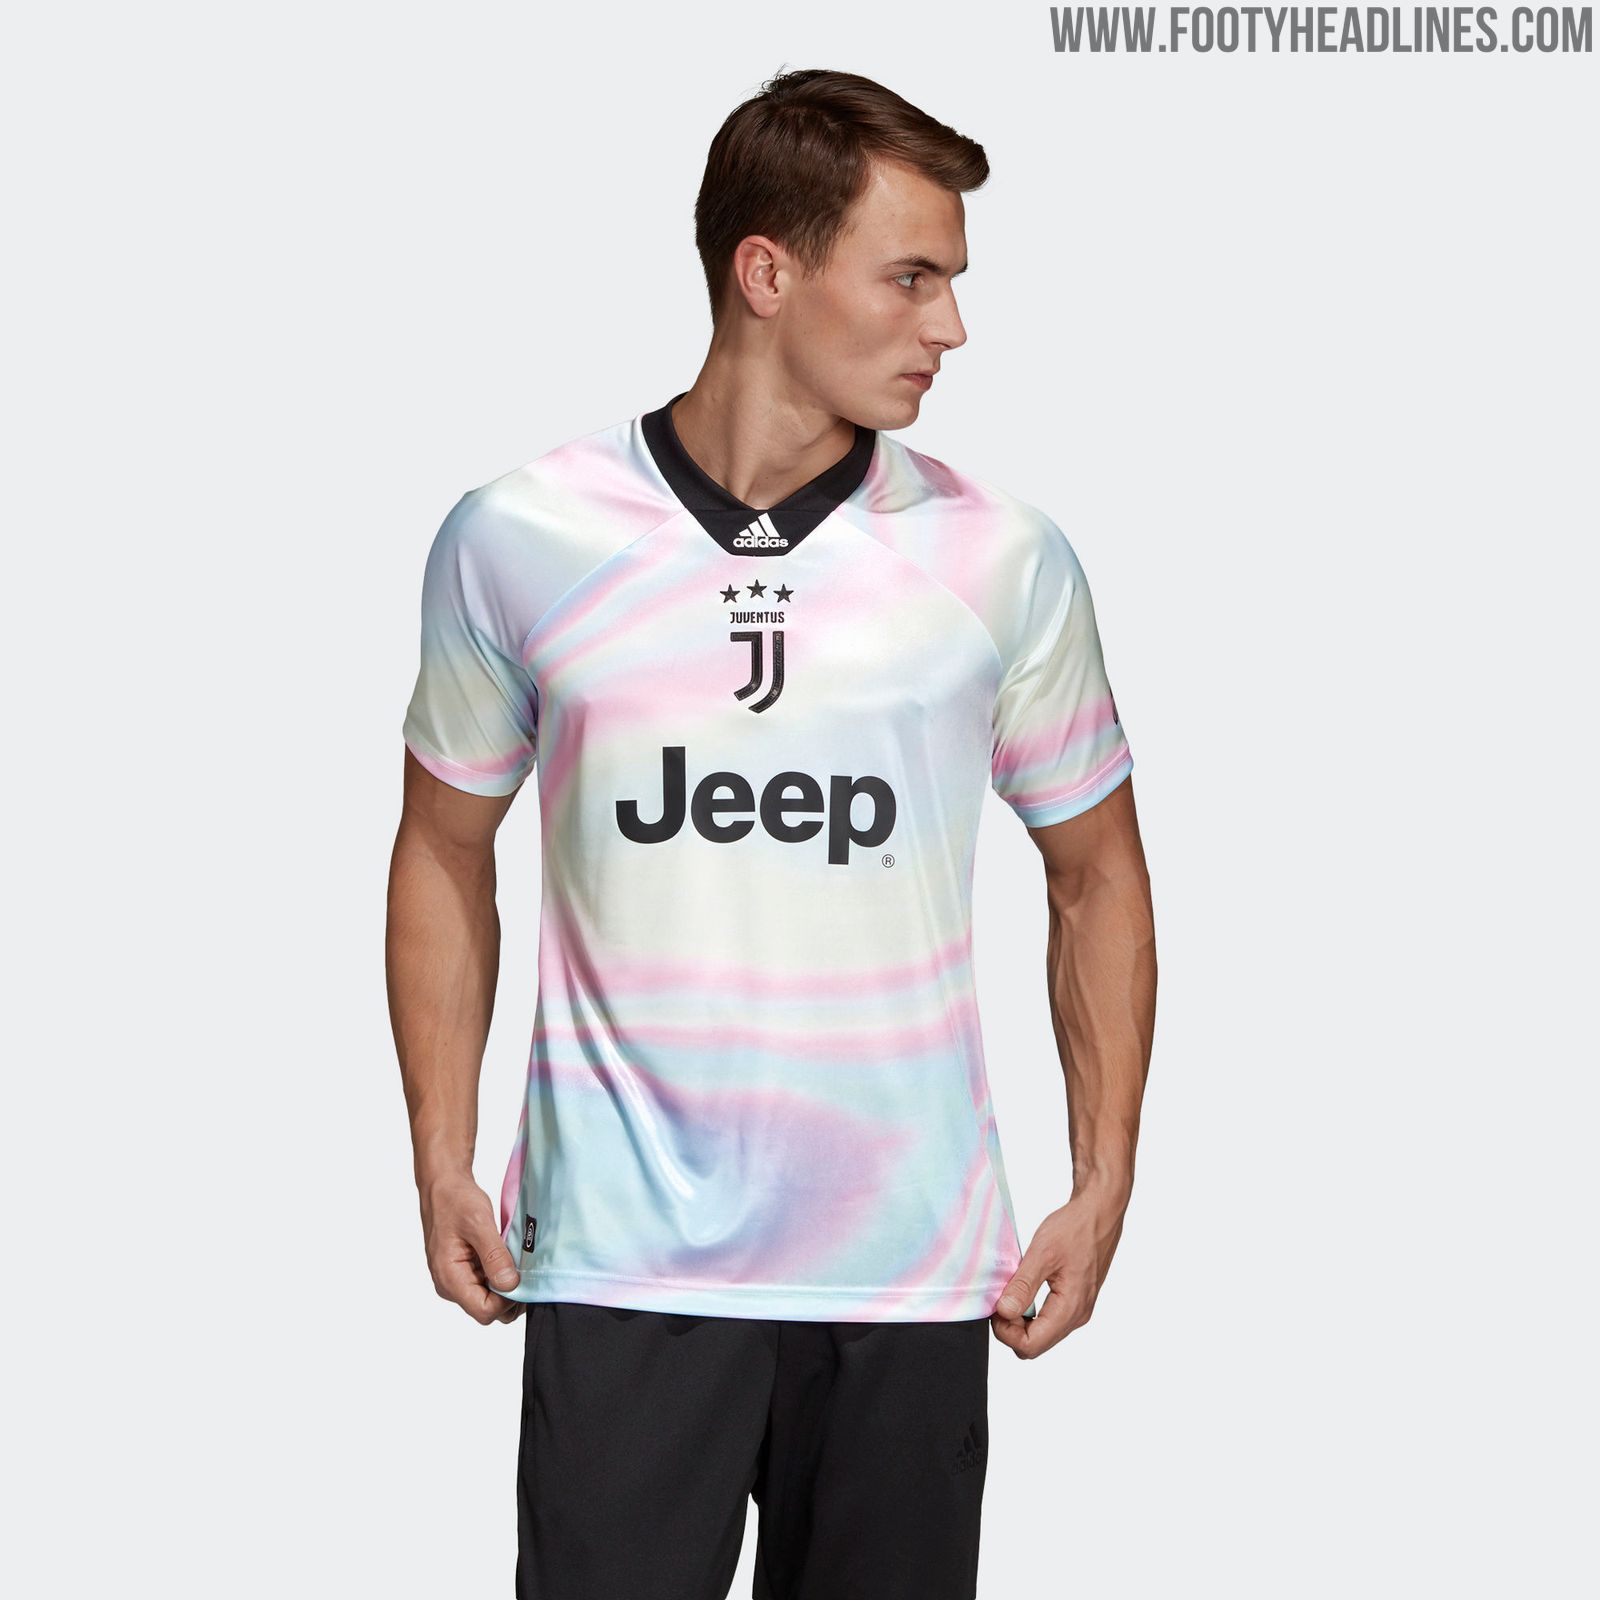 Cocinando A fondo pasar por alto Insane Adidas x EA Sports Juventus Fourth Kit Released - Footy Headlines